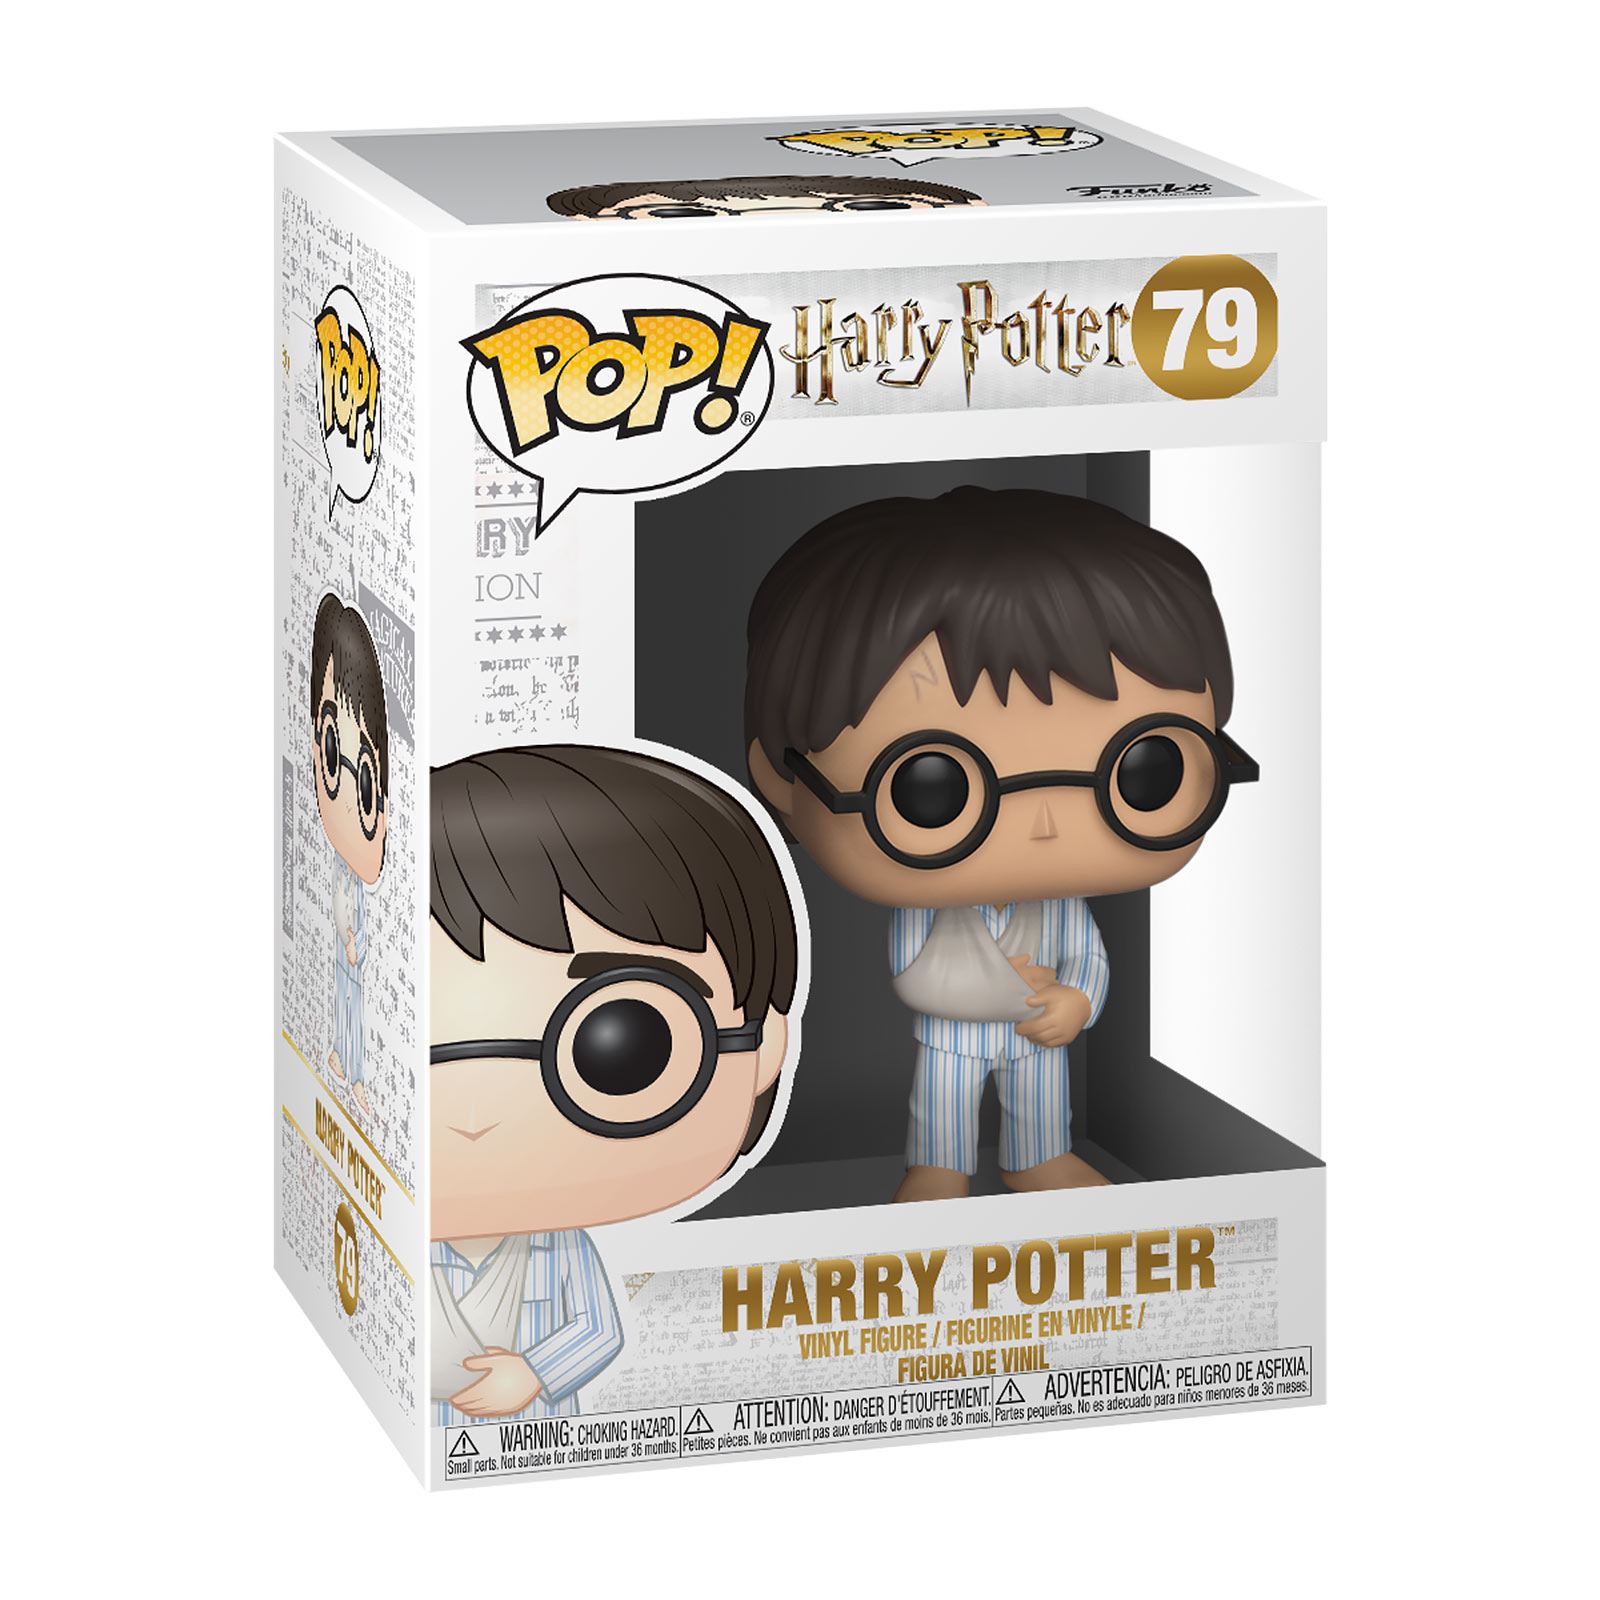 Harry Potter in de ziekenhuisvleugel - Funko Pop Figurine